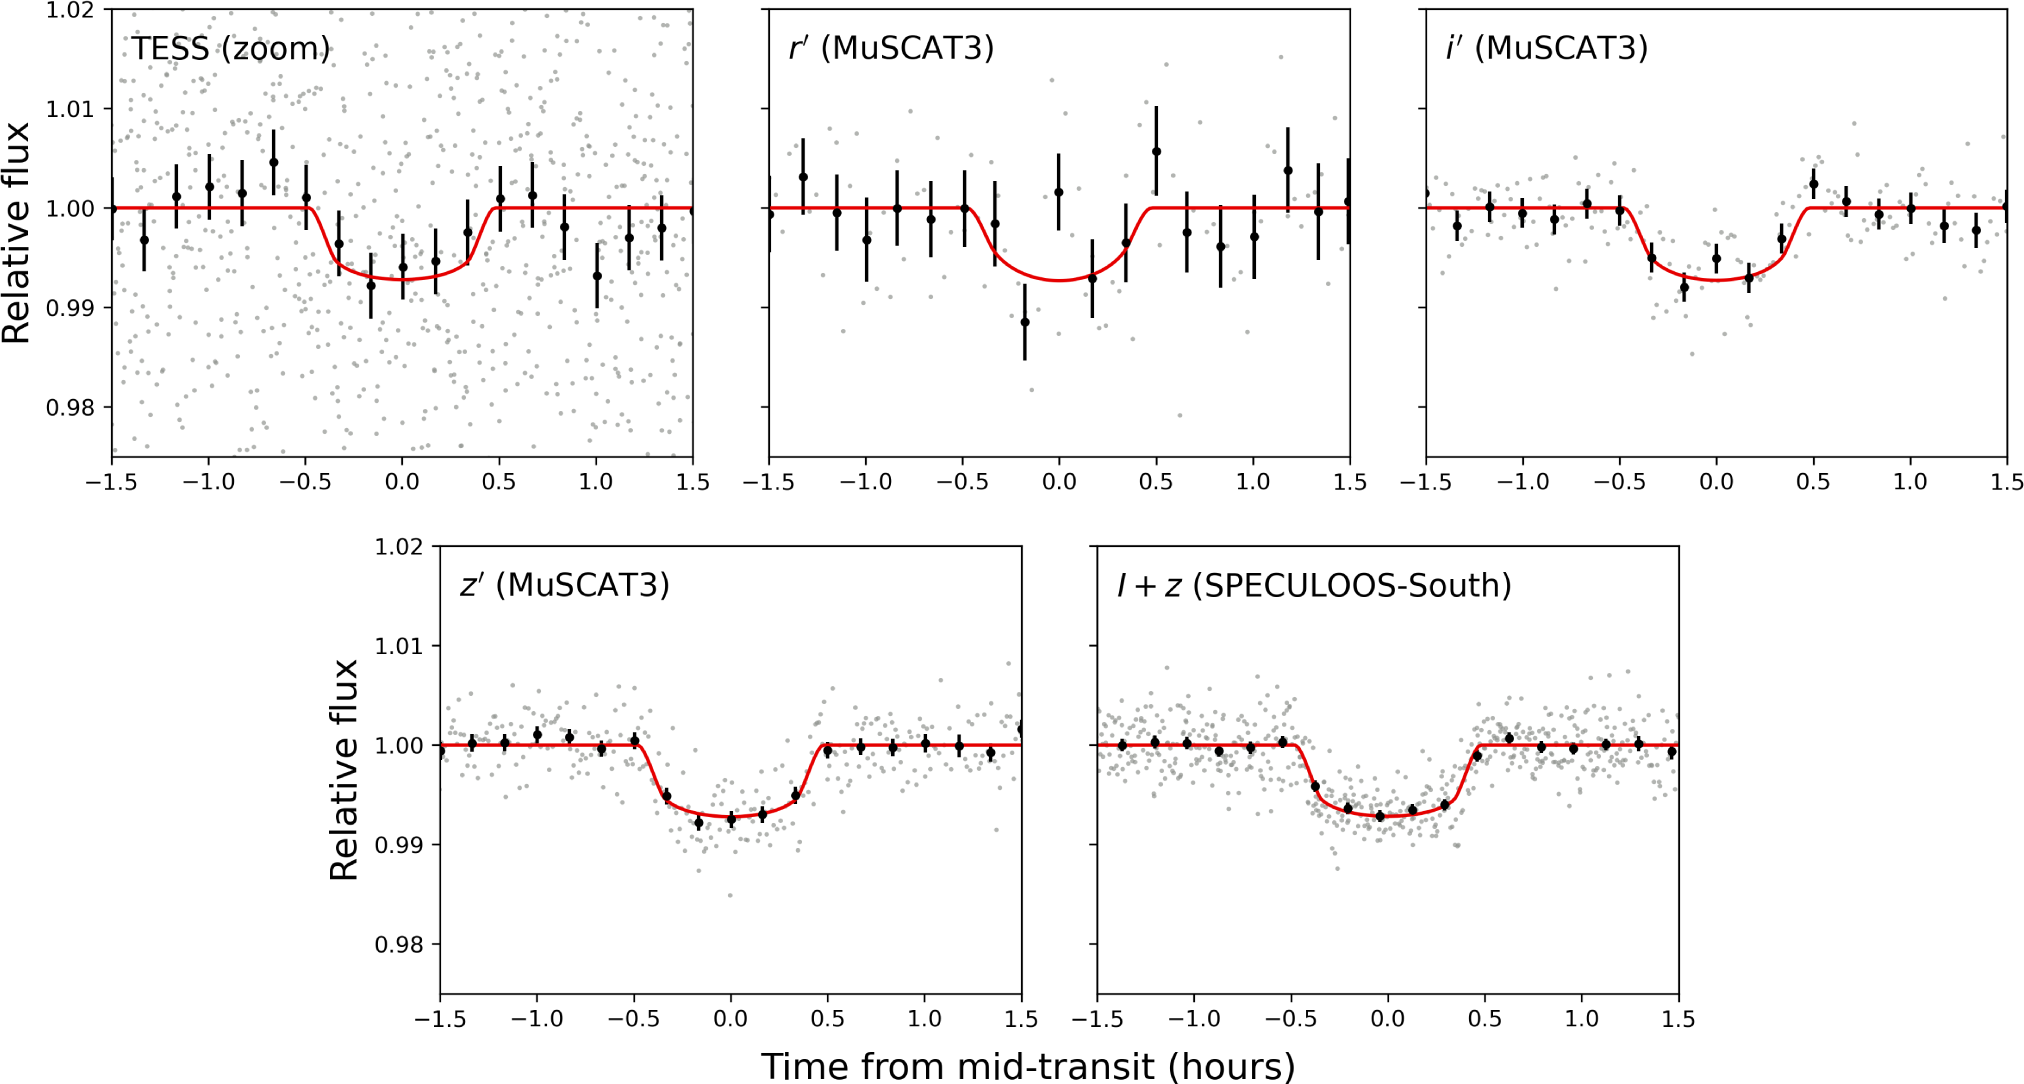 Obserwacje fotometryczne kilku tranzytów egzoplanety LP 890-9 c przez różne filtry i teleskopy (TESS, MuSCAT3, SPECULOOS). Pojedyncze obserwacje reprezentują szare kropki, a czarne koła ze słupkami błędów – uśrednione obserwacje z 10 minut. Najlepszemu dopasowaniu tranzytu odpowiada czerwona linia. Garby w środku tranzytów dla teleskopu MuSCAT3 w barwach r′ oraz  i’ mogą być związane z plamami na powierzchni gwiazdy. Tranzyt LP 890-9 c trwa około 1 godziny. Źródło (dostęp otwarty CC BY 4.0): L. Delrez i inni, A&A 667, A59 (2022), DOI: 10.1051/0004-6361/202244041